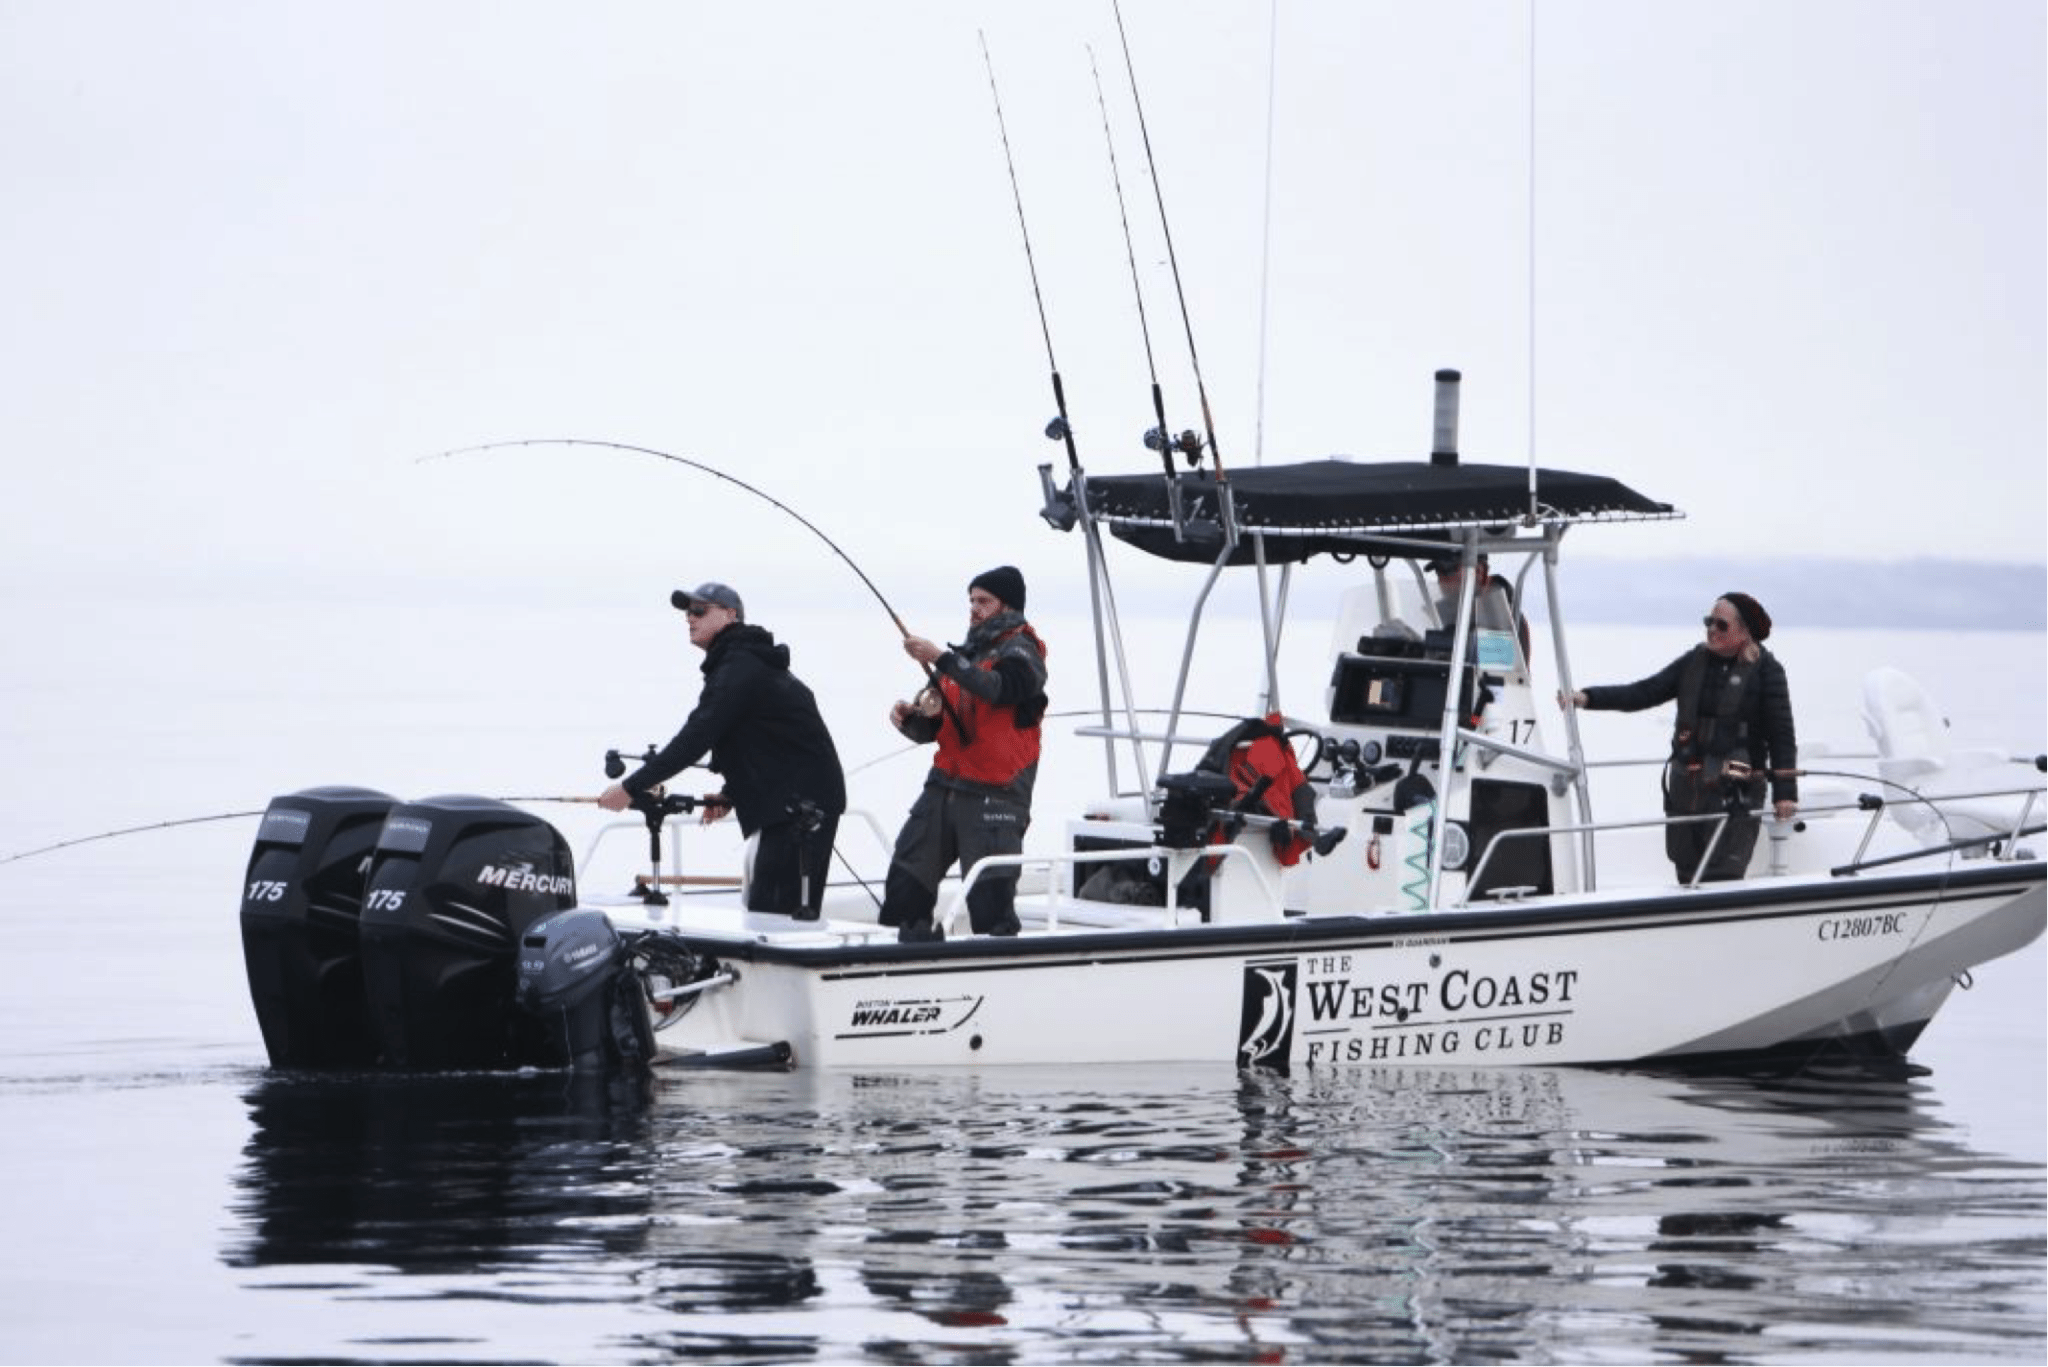 West Coast Fishing Club